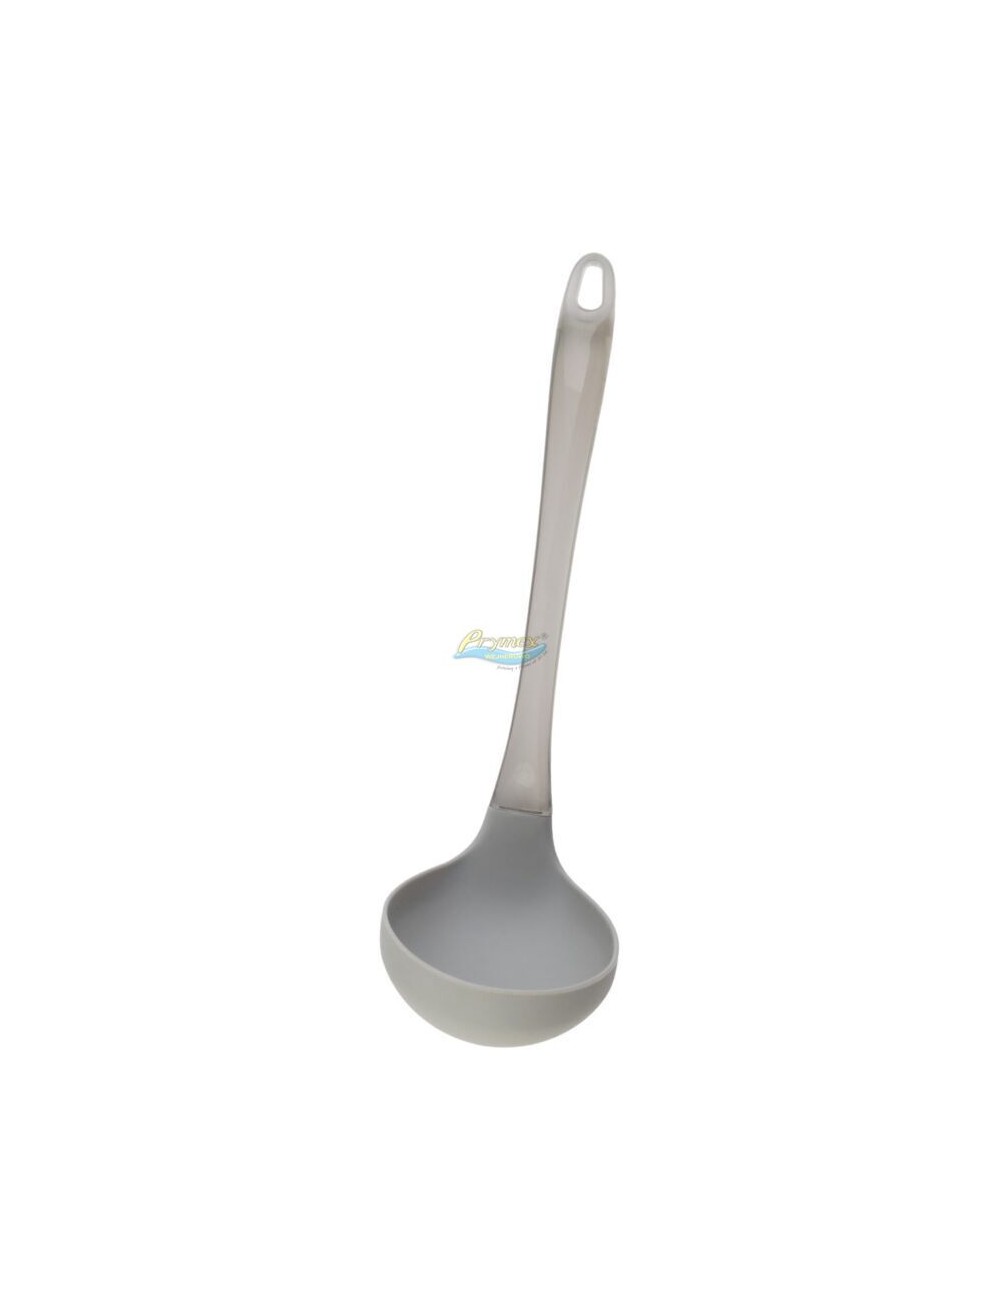 Chochla Silikonowa (30 cm) Wazowa do Nalewania Zupy z Plastikowym Uchwytem Koko 1 szt